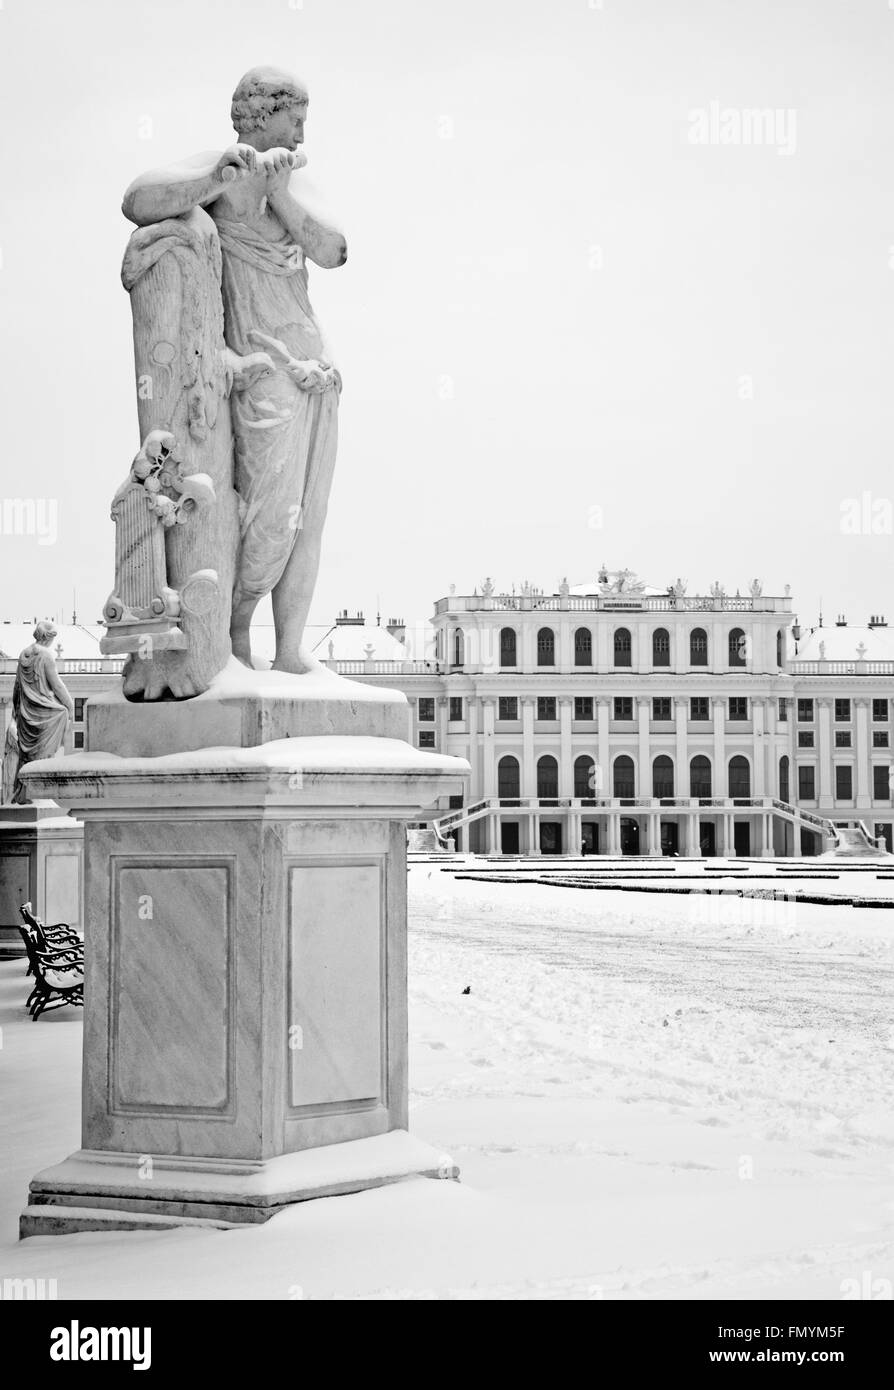 Vienne, Autriche - 15 janvier 2013 : statue de Mercure avec la flûte par I. Platzer dans les jardins du palais de Schonbrunn en hiver. Banque D'Images